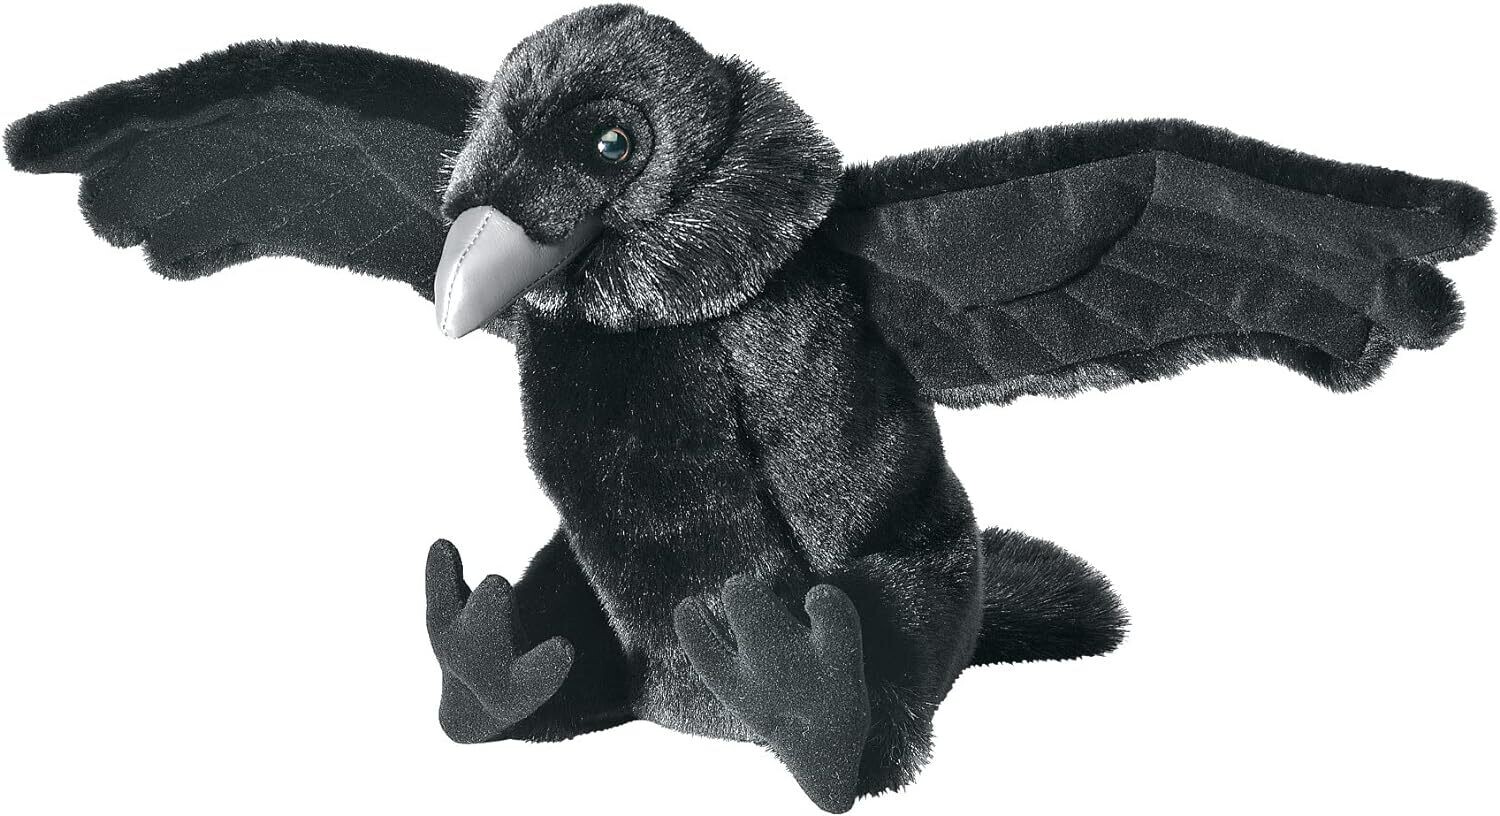 Raven Stuffed Animal